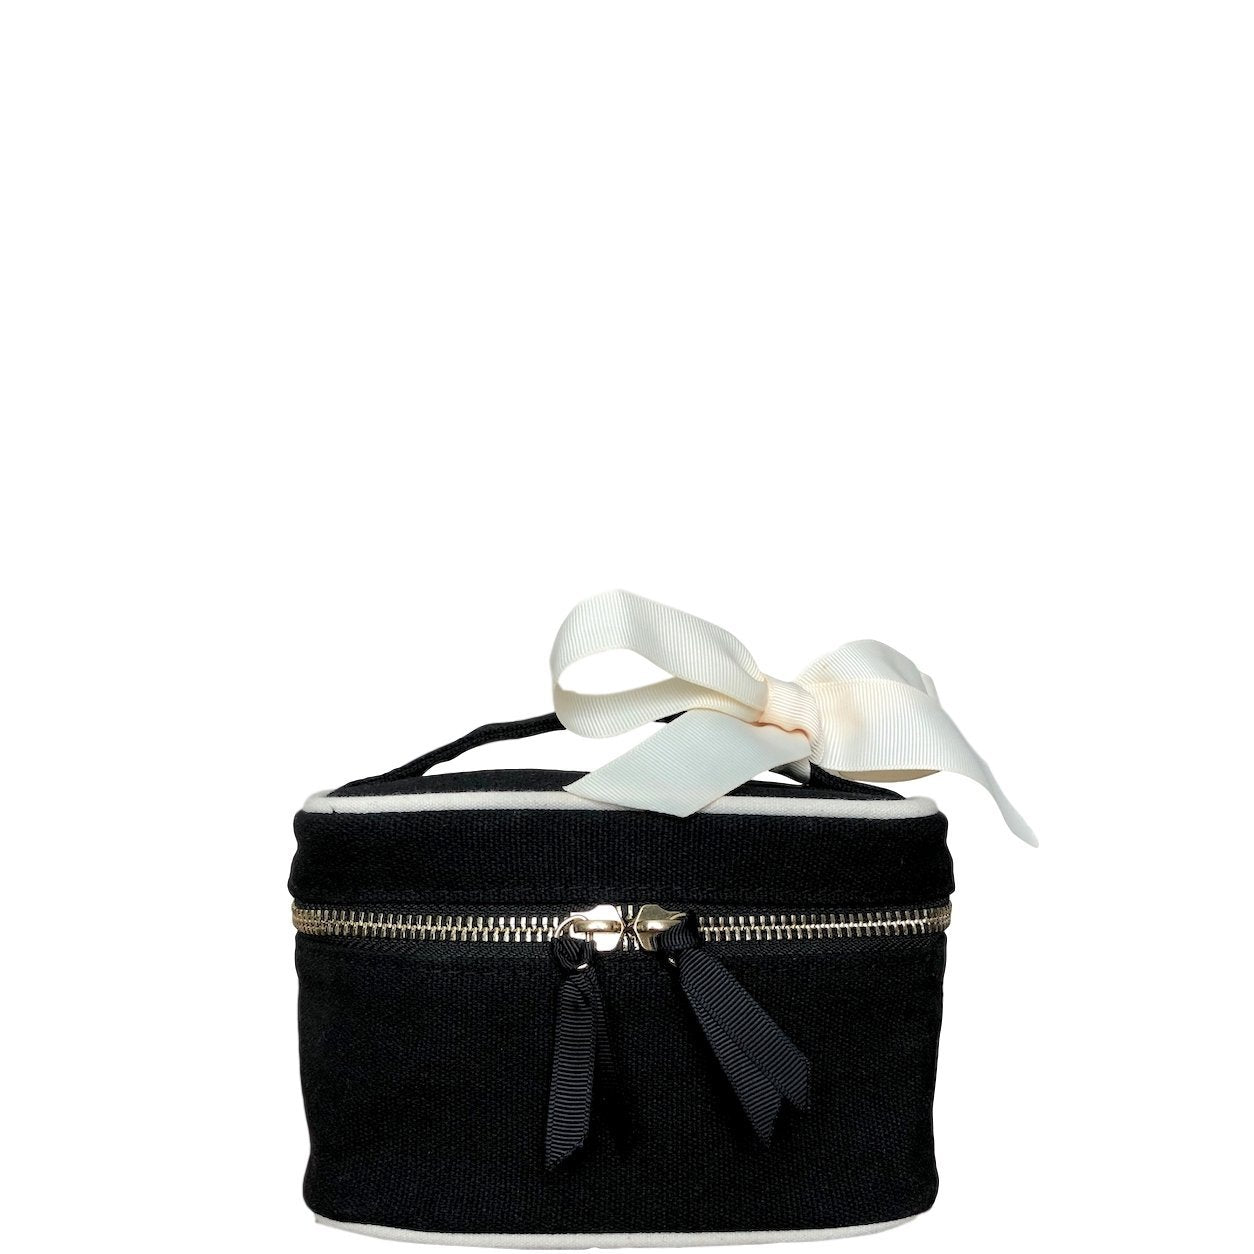 Mini boîte de beauté noire avec des détails blancs et un nœud blanc attaché à la poignée.